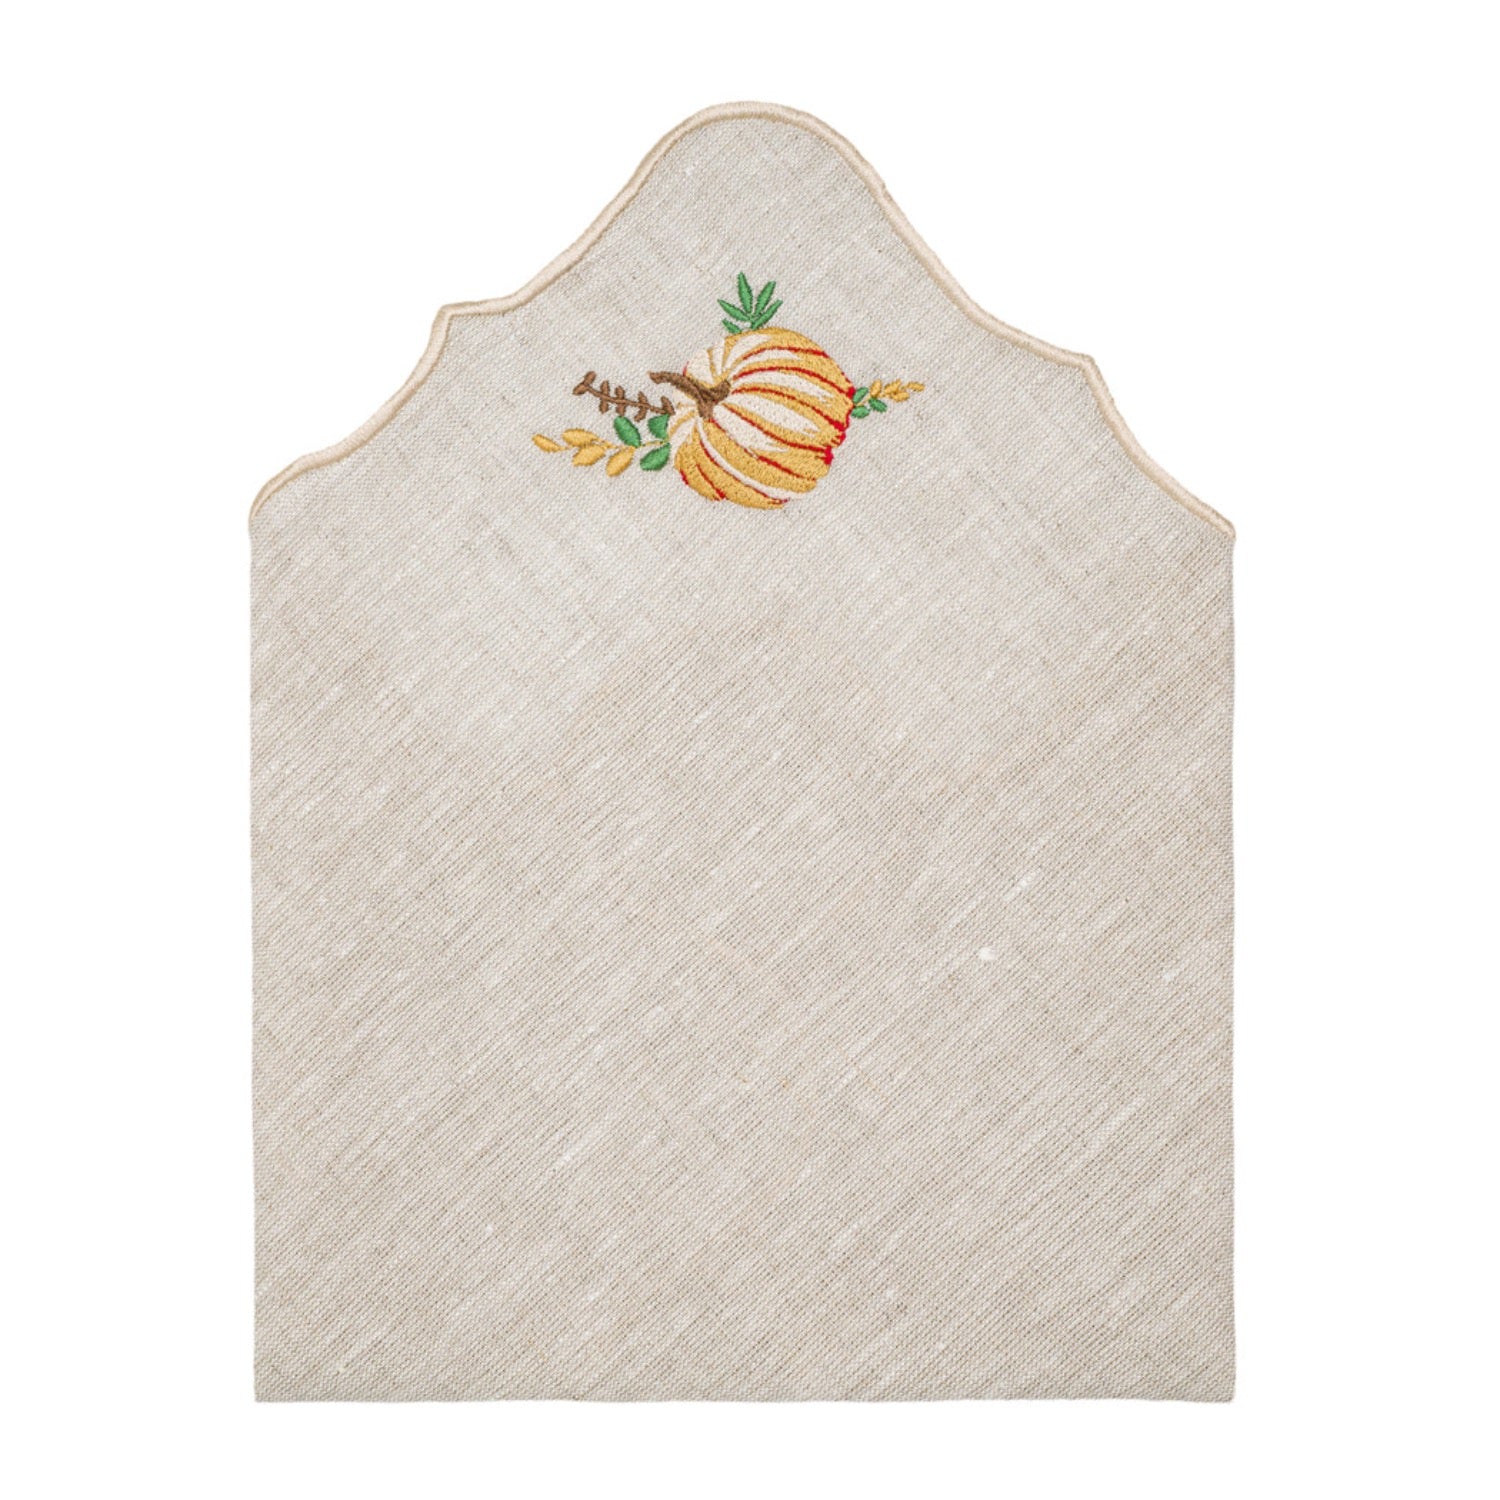 Set of 2 Pumpkin Embroidery Linen Napkin